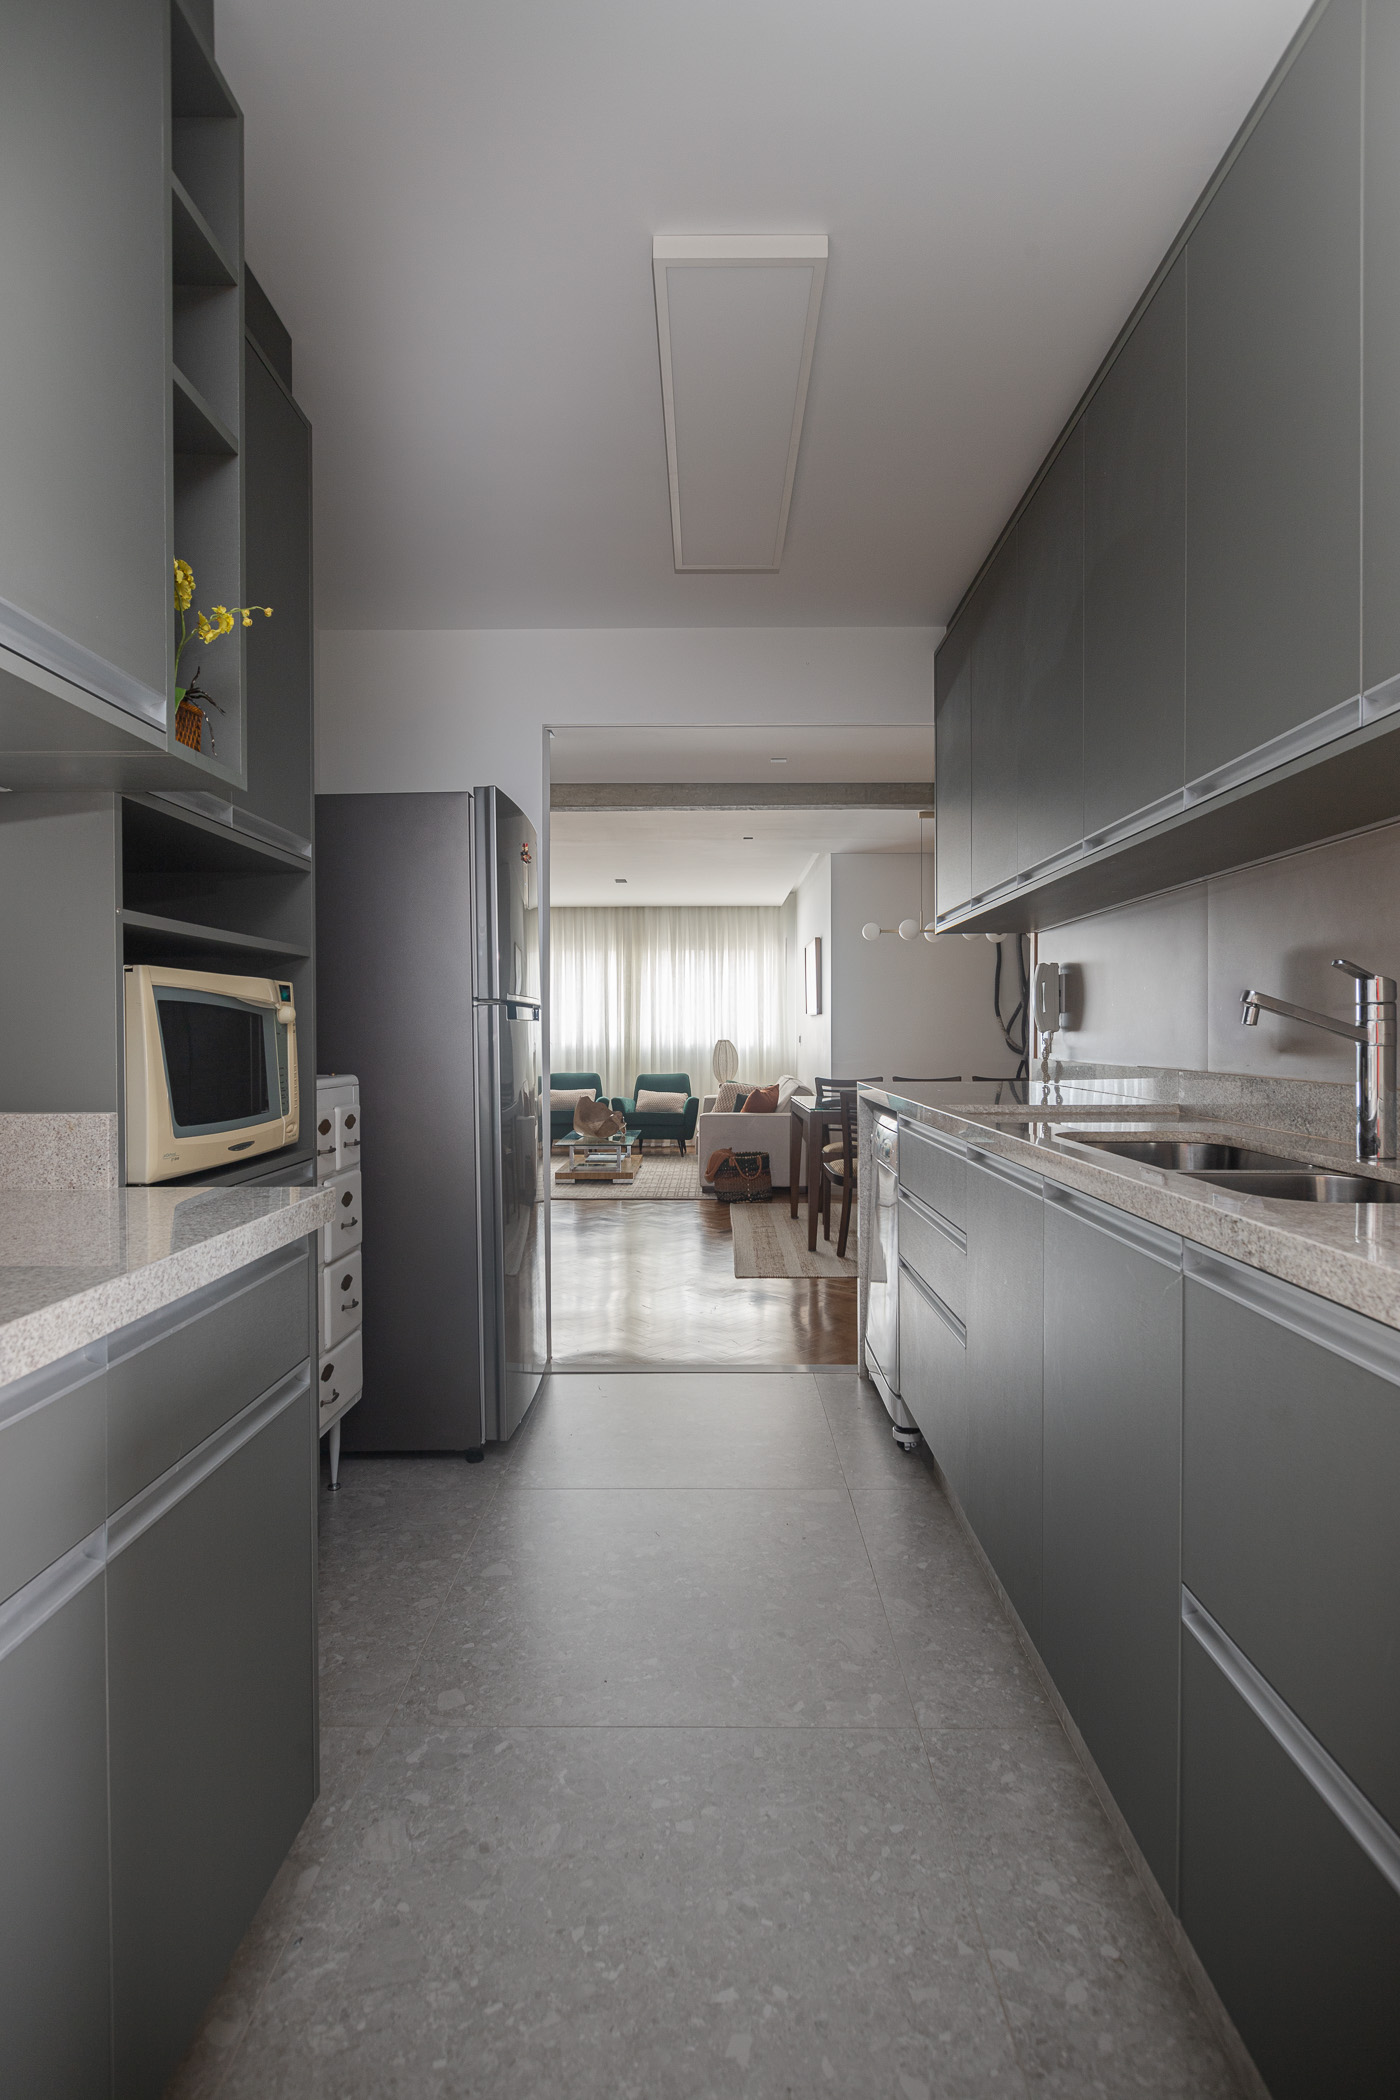 Memórias afetivas mix de revestimentos apê 110 m2 Inovando Arquitetura decoração cozinha porta armarios cinza marcenaria